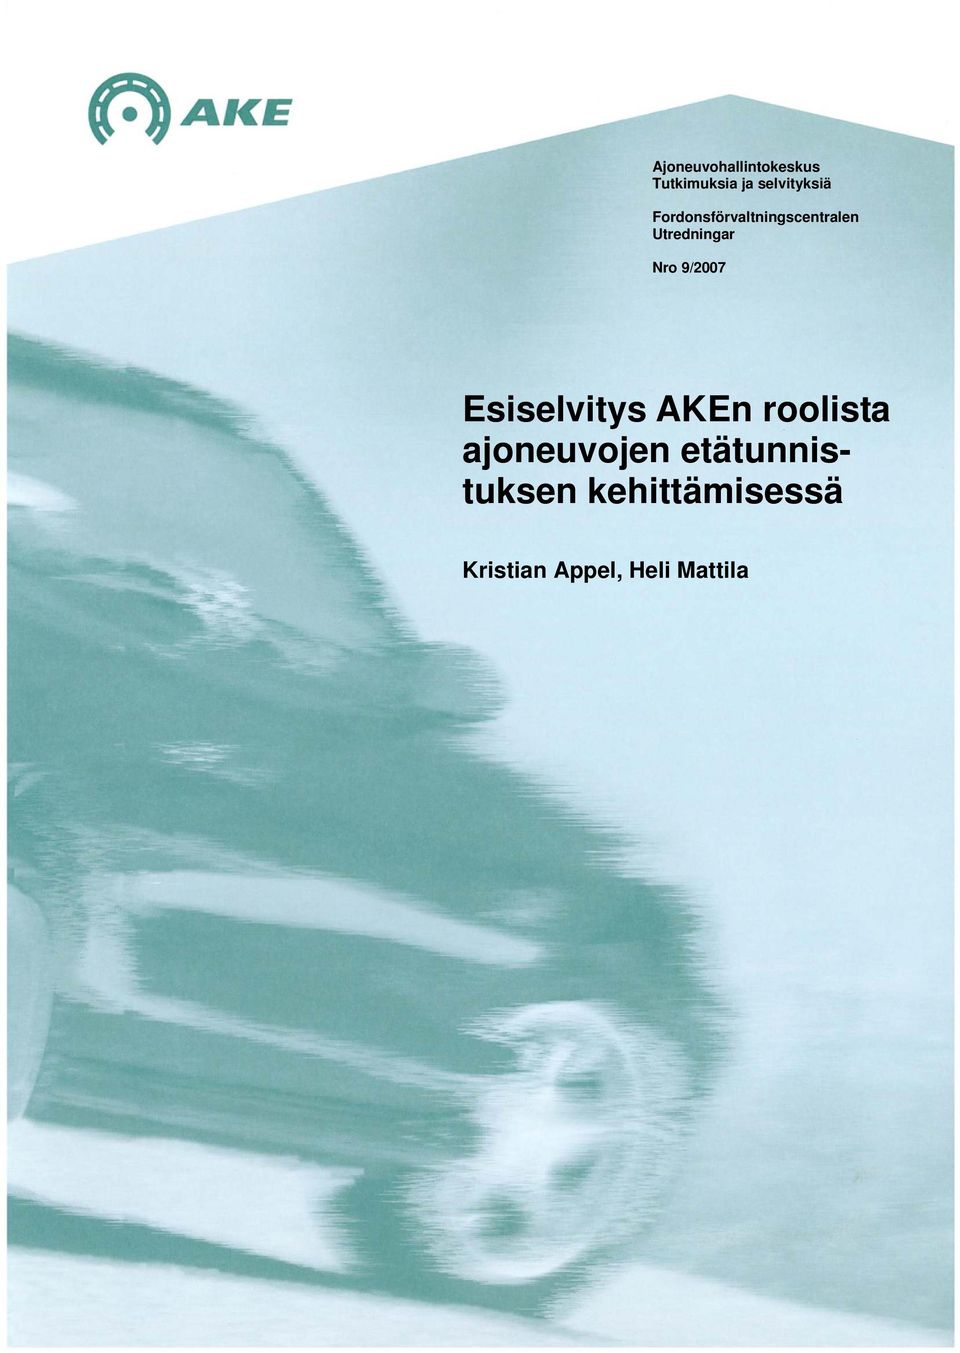 9/2007 Esiselvitys AKEn roolista ajoneuvojen